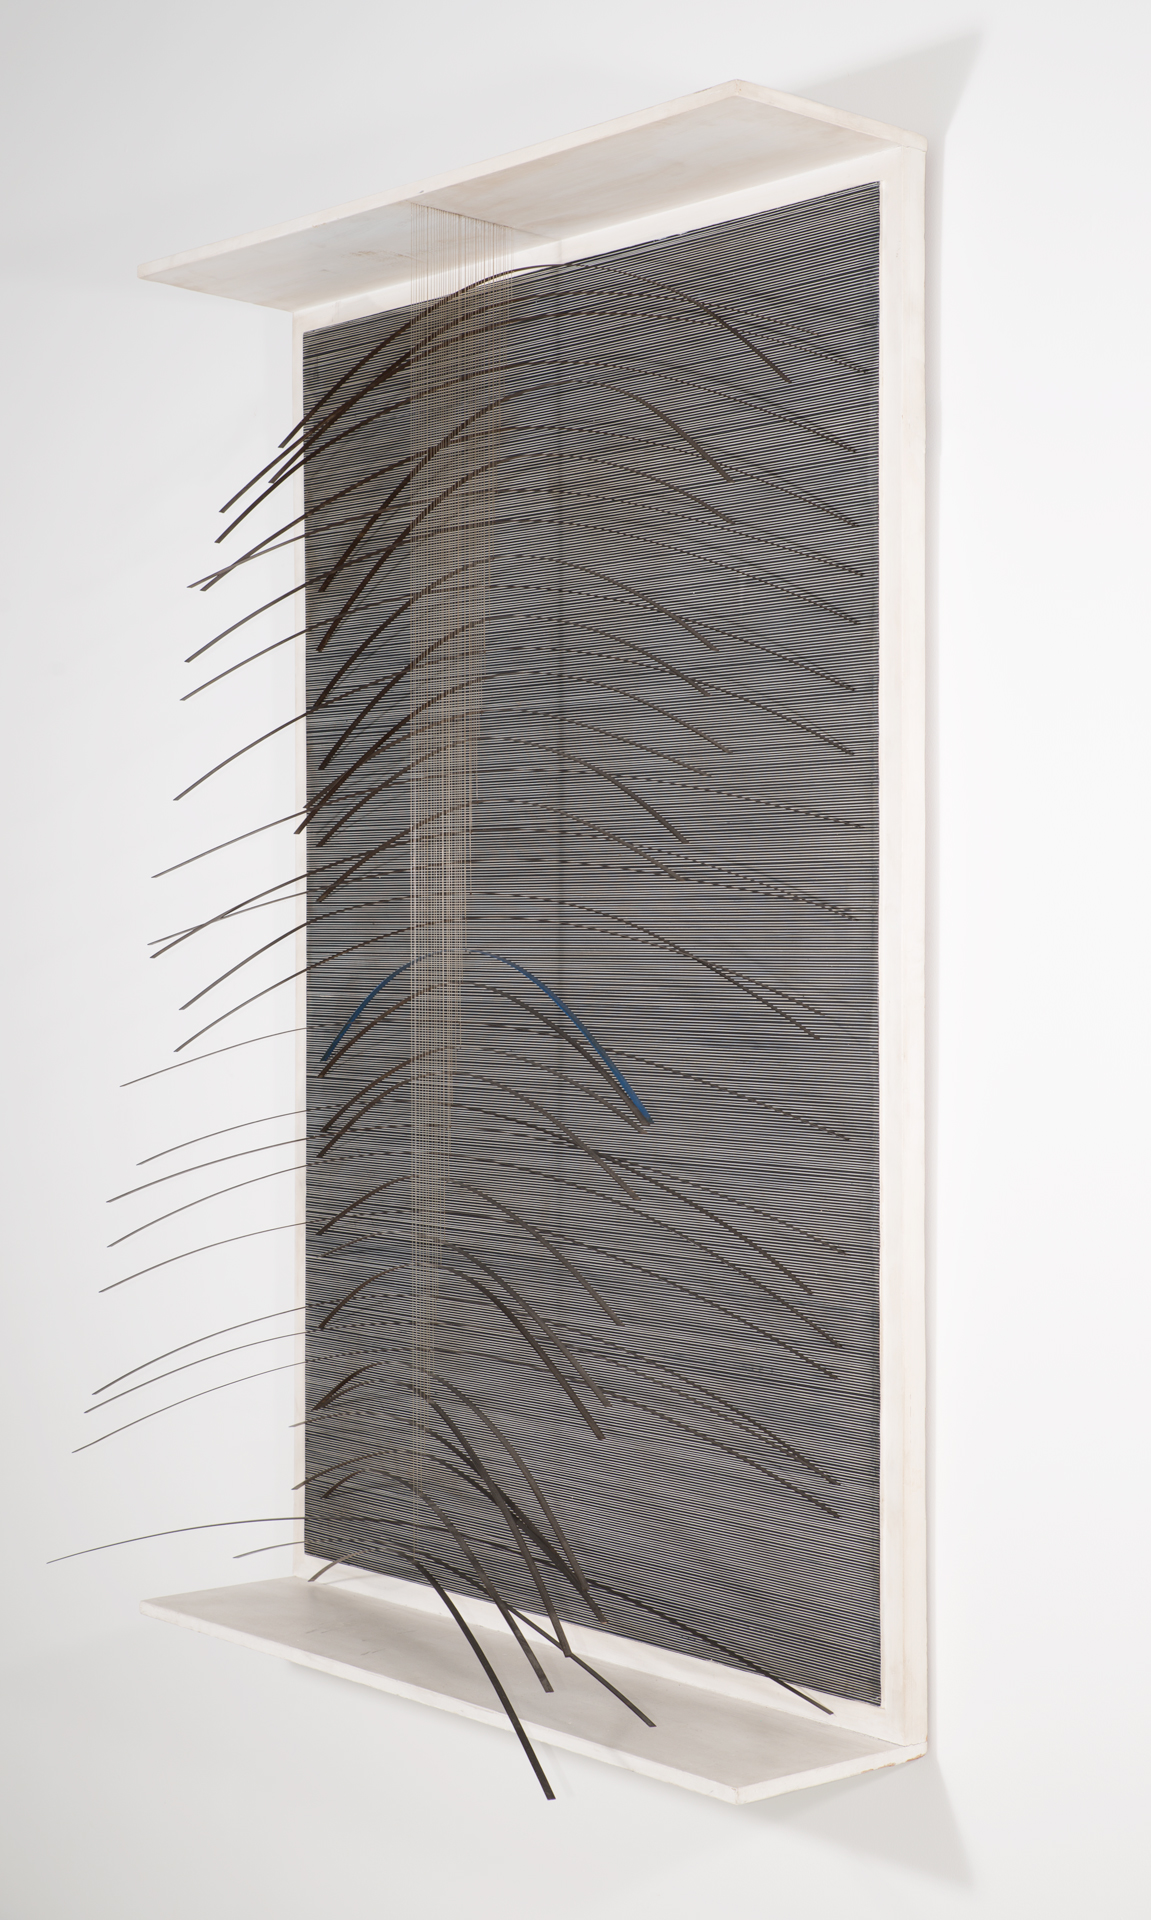 Jesus Rafael Soto, „Curve bleu”, 1965, akryl, dreno, metal, nylon, 158,4 x 105,7 cm, dzieki uprzejmosci fundacji Signum (źródło: materiały prasowe organizatora)